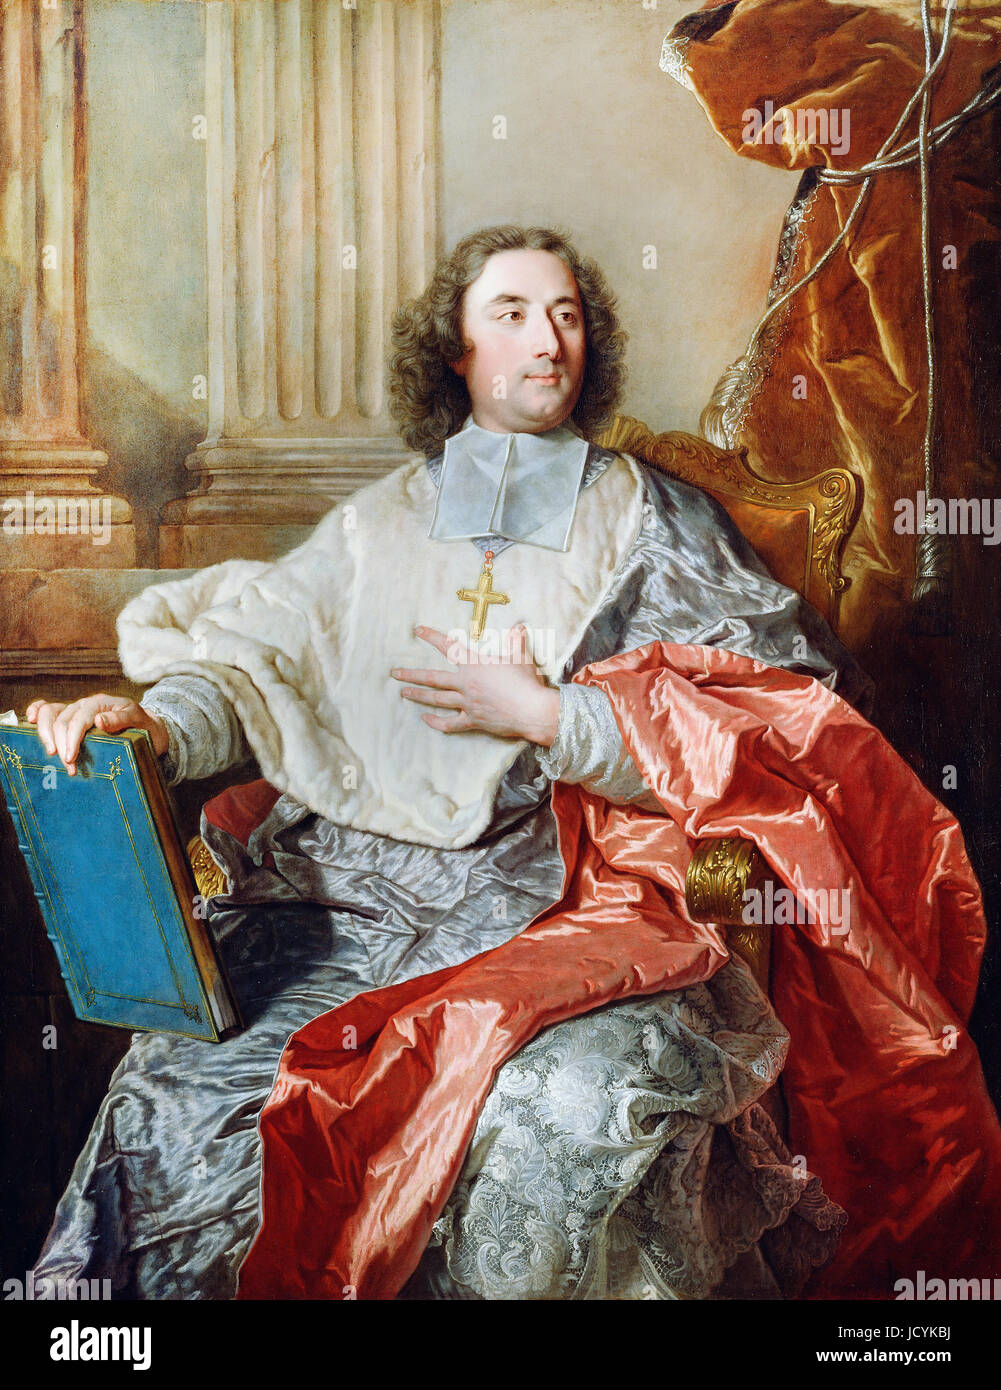 Hyacinthe Rigaud, Charles de Saint-Albin, Erzbischof von Cambrai. 1723-Öl auf Leinwand. Getty Center, Los Angeles, USA. Stockfoto